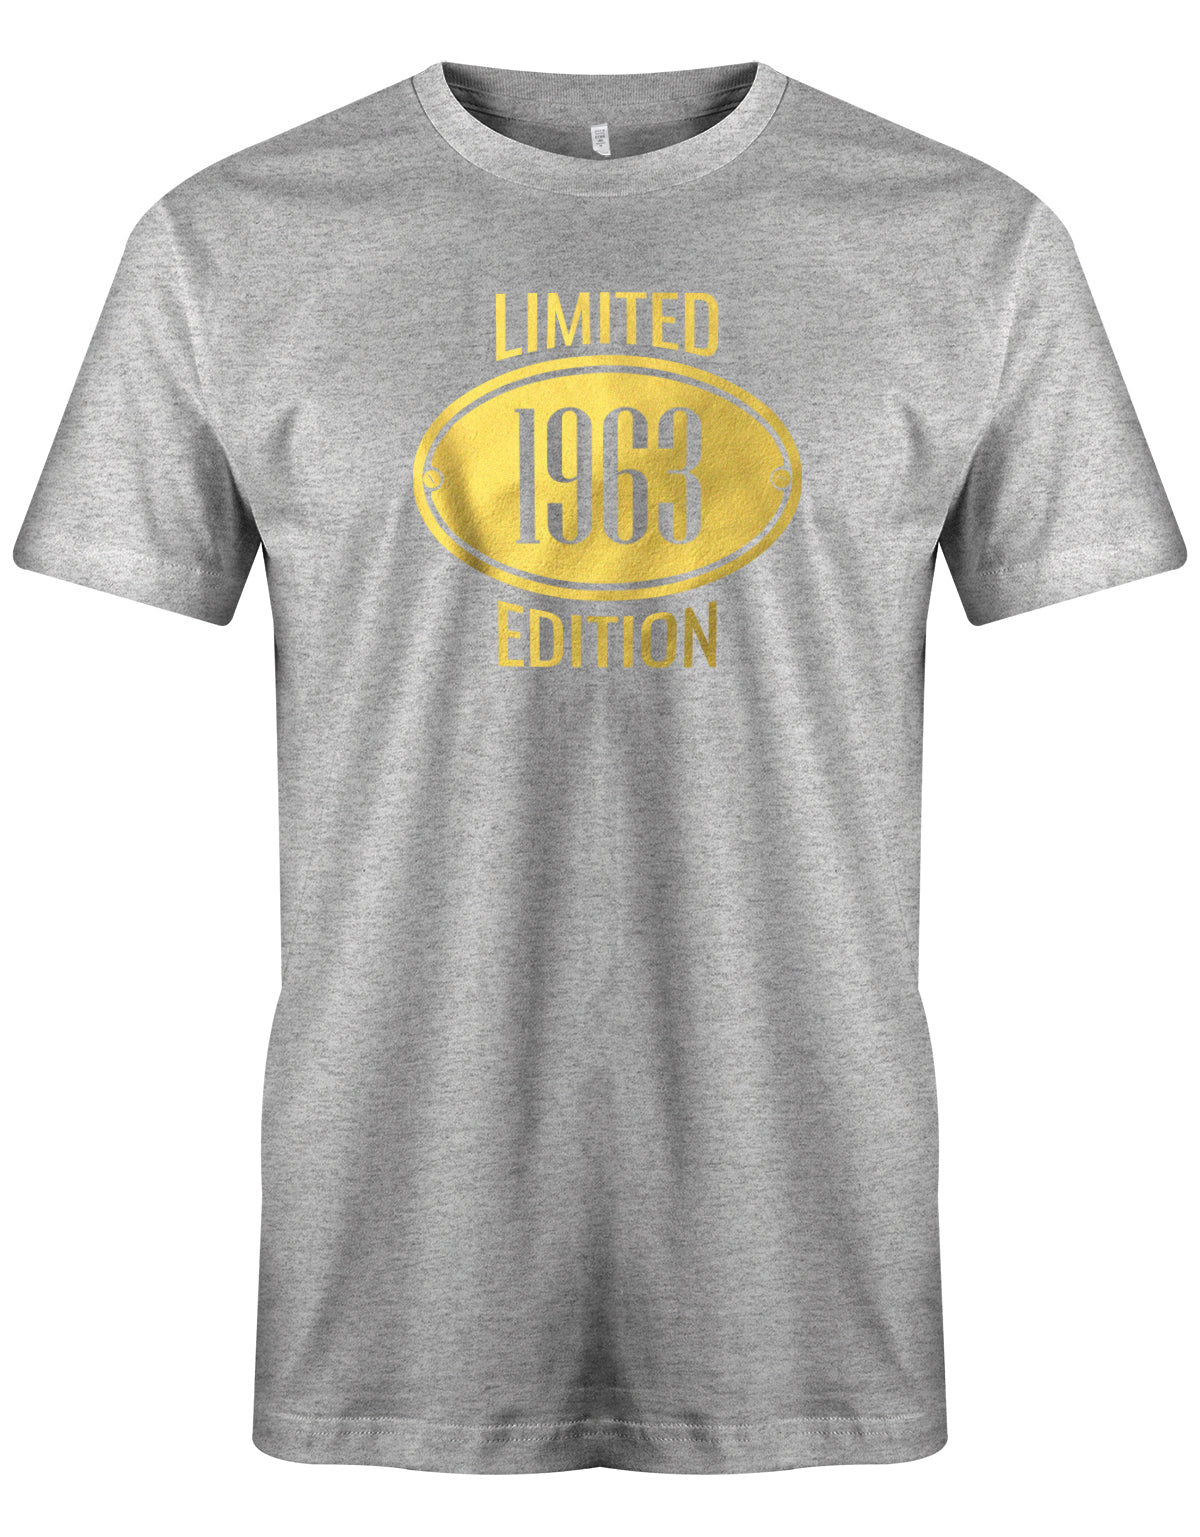 Limited Edition 1963 Gold - Jahrgang 1963 Geschenk Männer Shirt